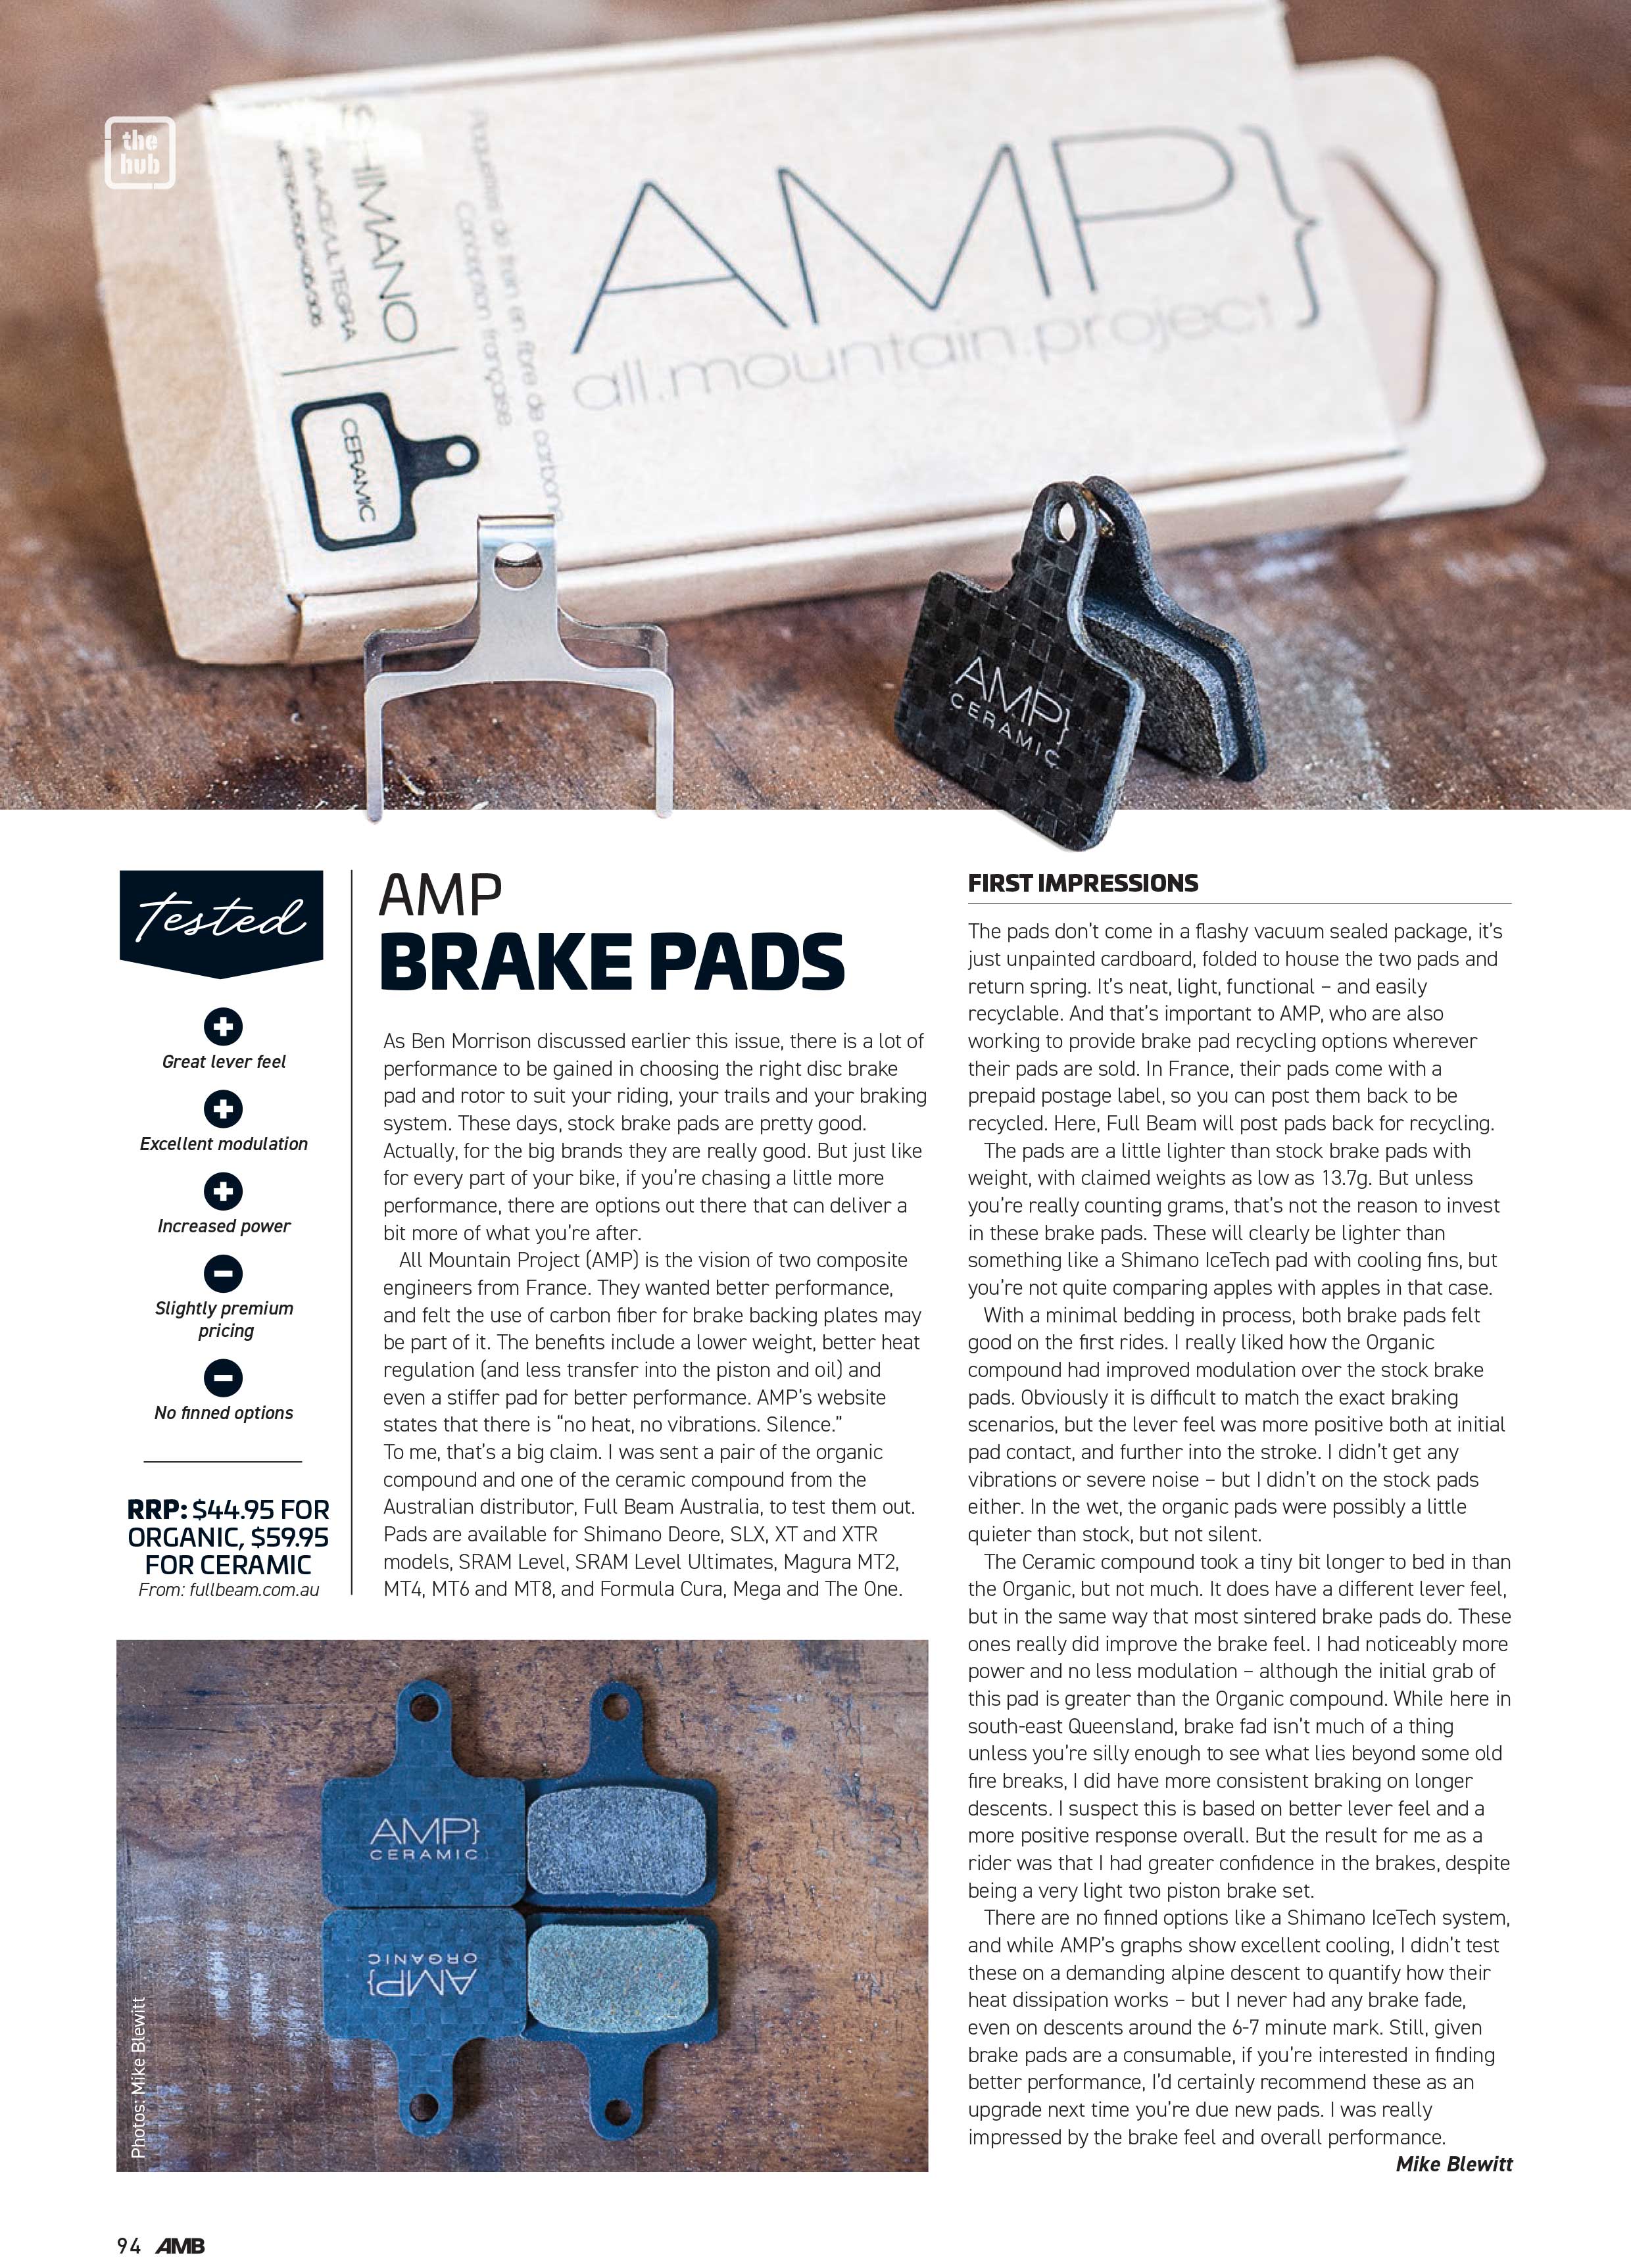 AMP Brake Pads Review